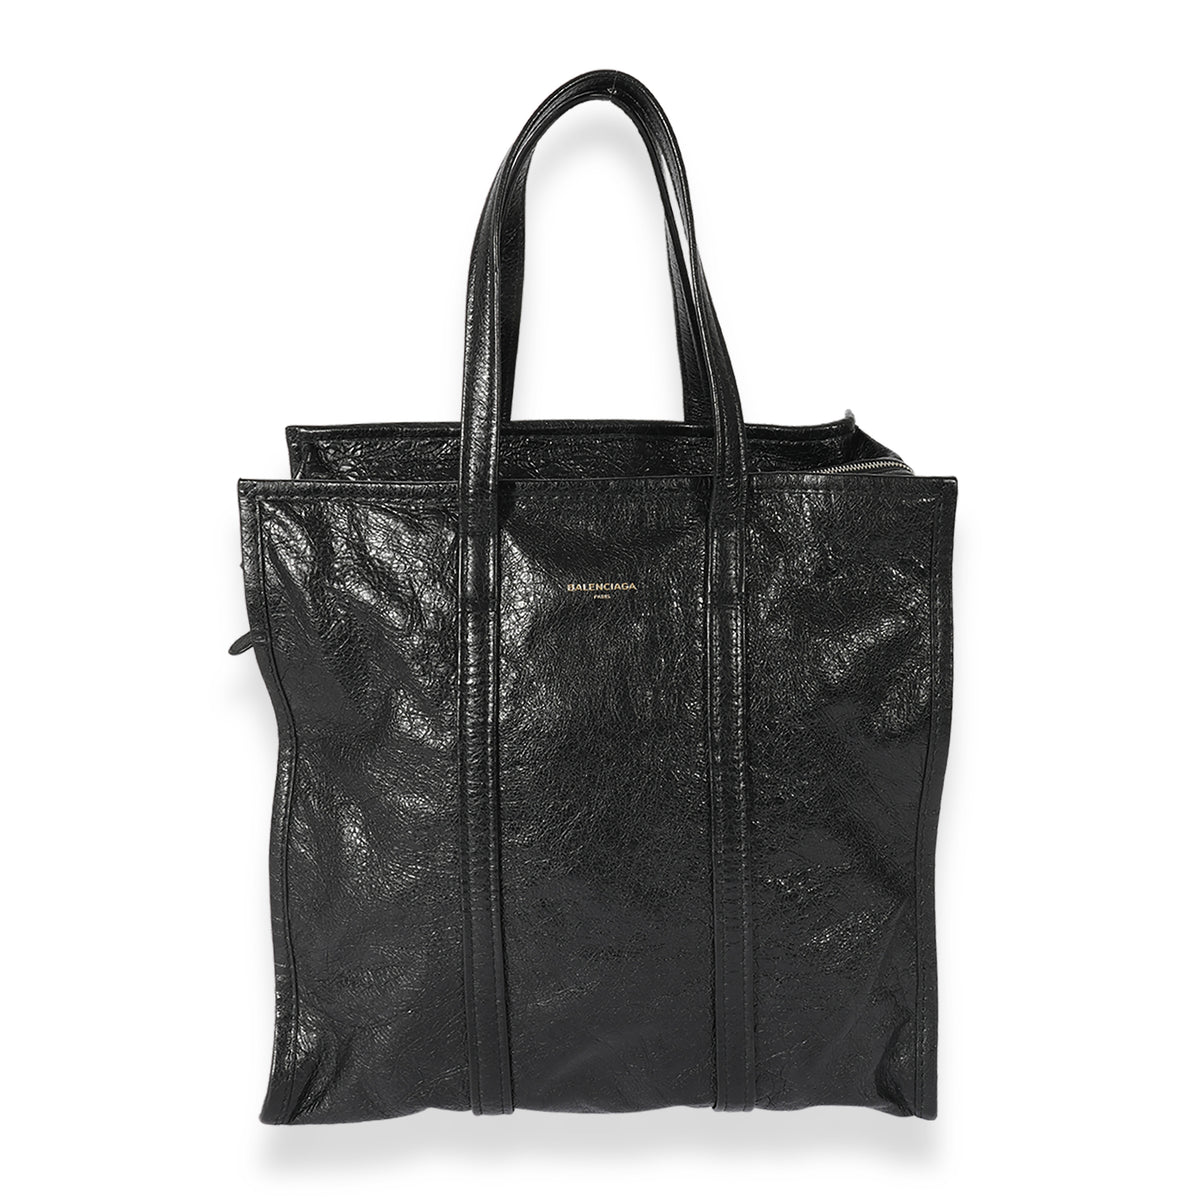 Balenciaga Black Leather Medium Bazar Shopper Tote